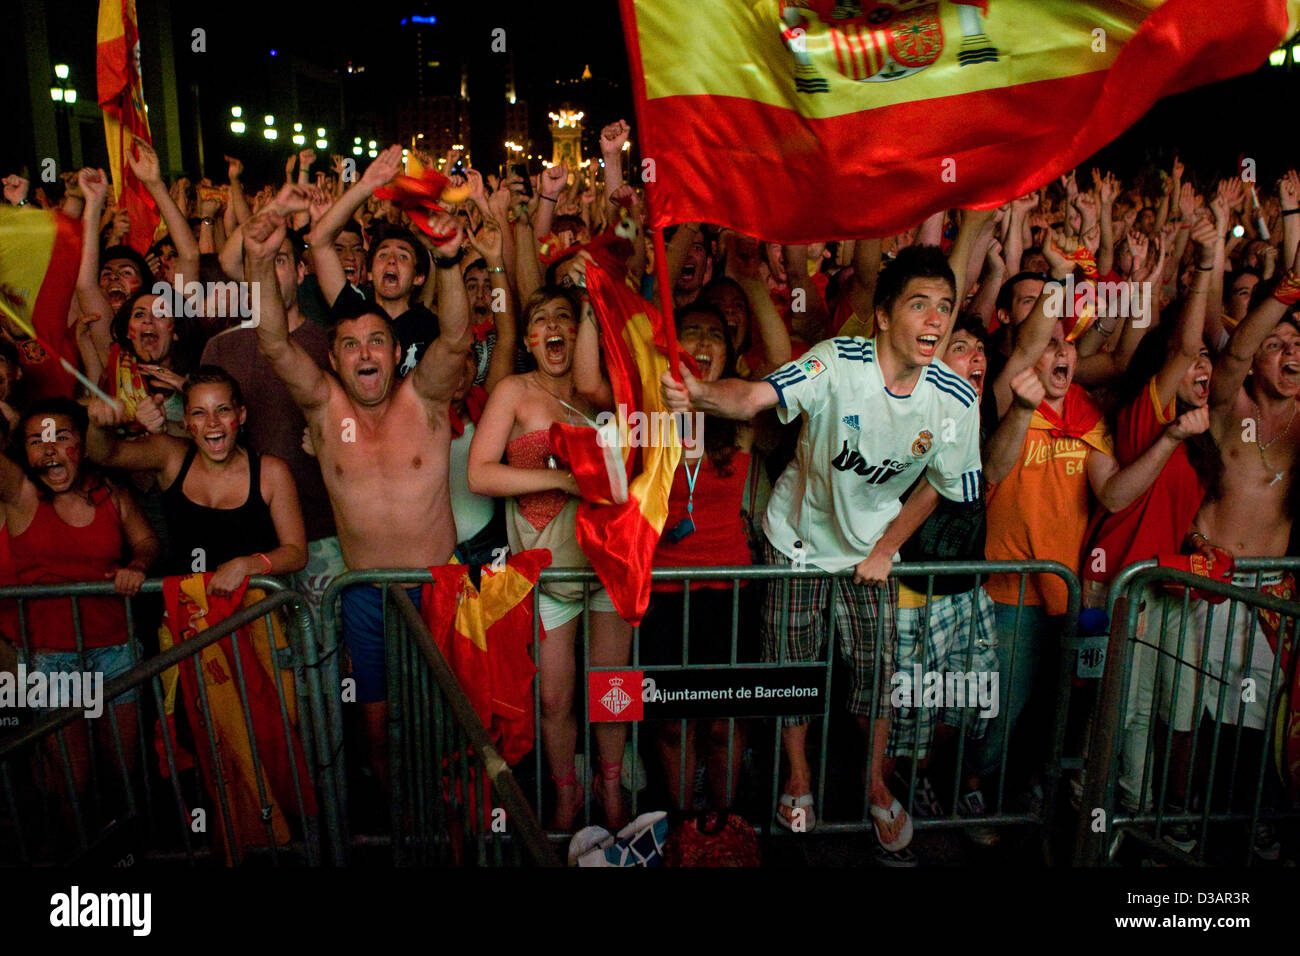 Barcelona, España, los aficionados al fútbol festejar la victoria después de ganar la Copa del Mundo Foto de stock